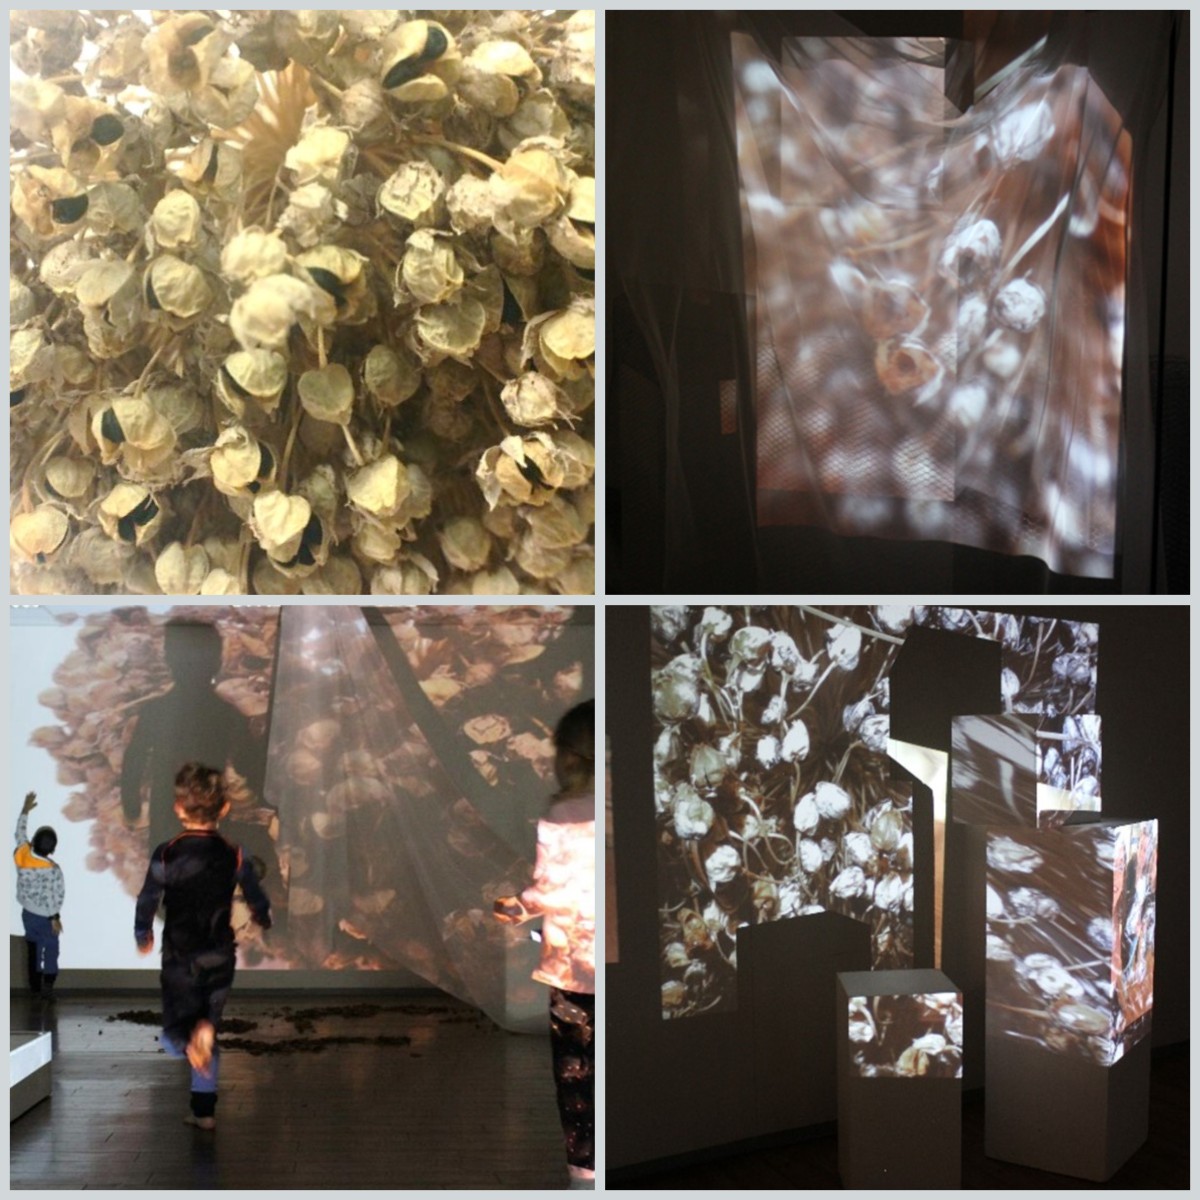 Fire foto av digital utsforsking av en purreløksblomst. Nærbilde av blomsten, små klokker. Noen barn beveger seg gjennom et rom der bildet av blomsten projiseres på veggen og tekstiler som henger fra taket.